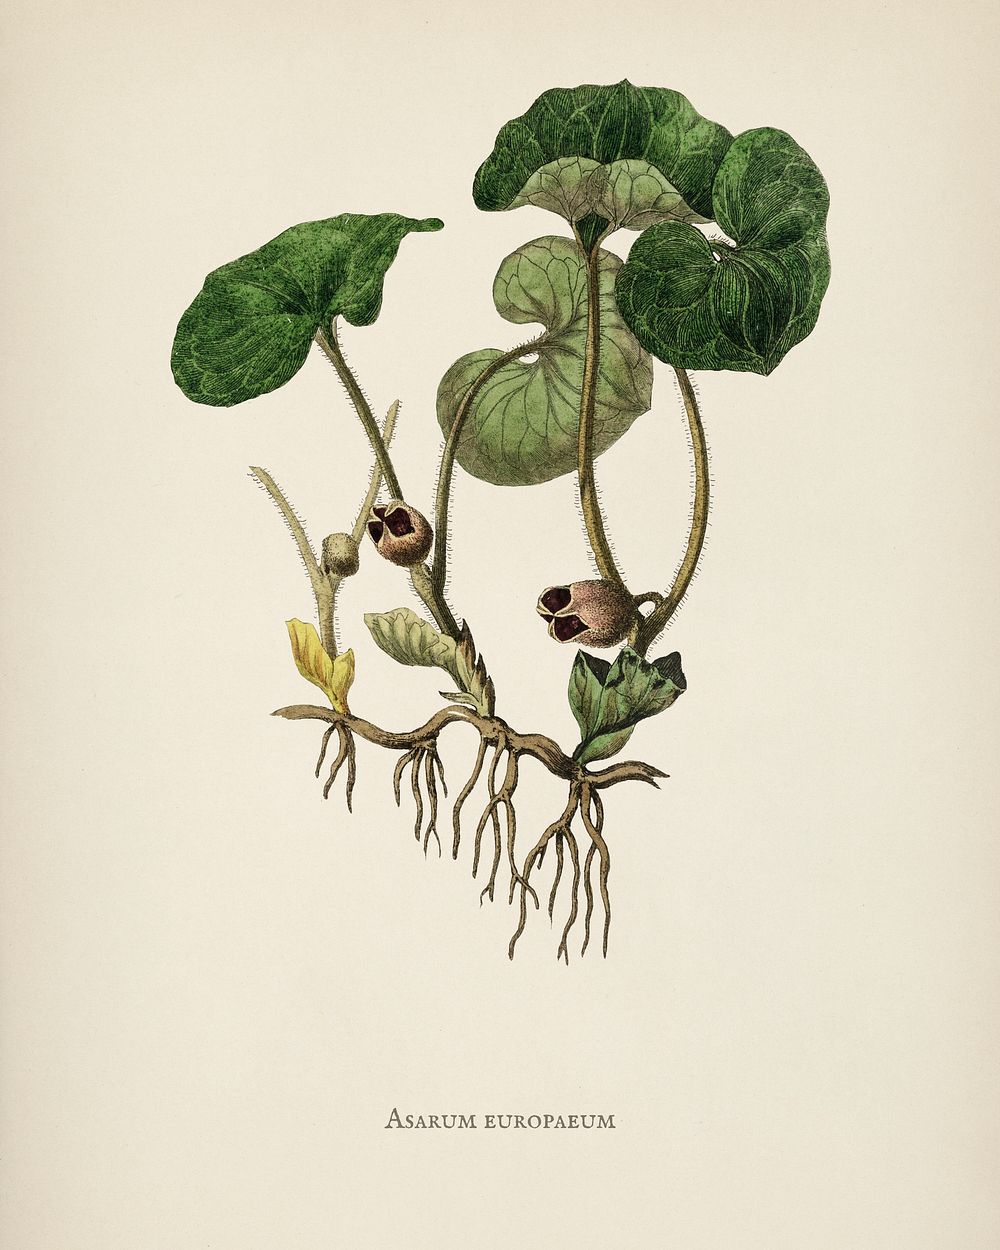 European Wild Ginger (Asarum europaeum) illustration from Medical Botany (1836) by John Stephenson and James Morss Churchill.